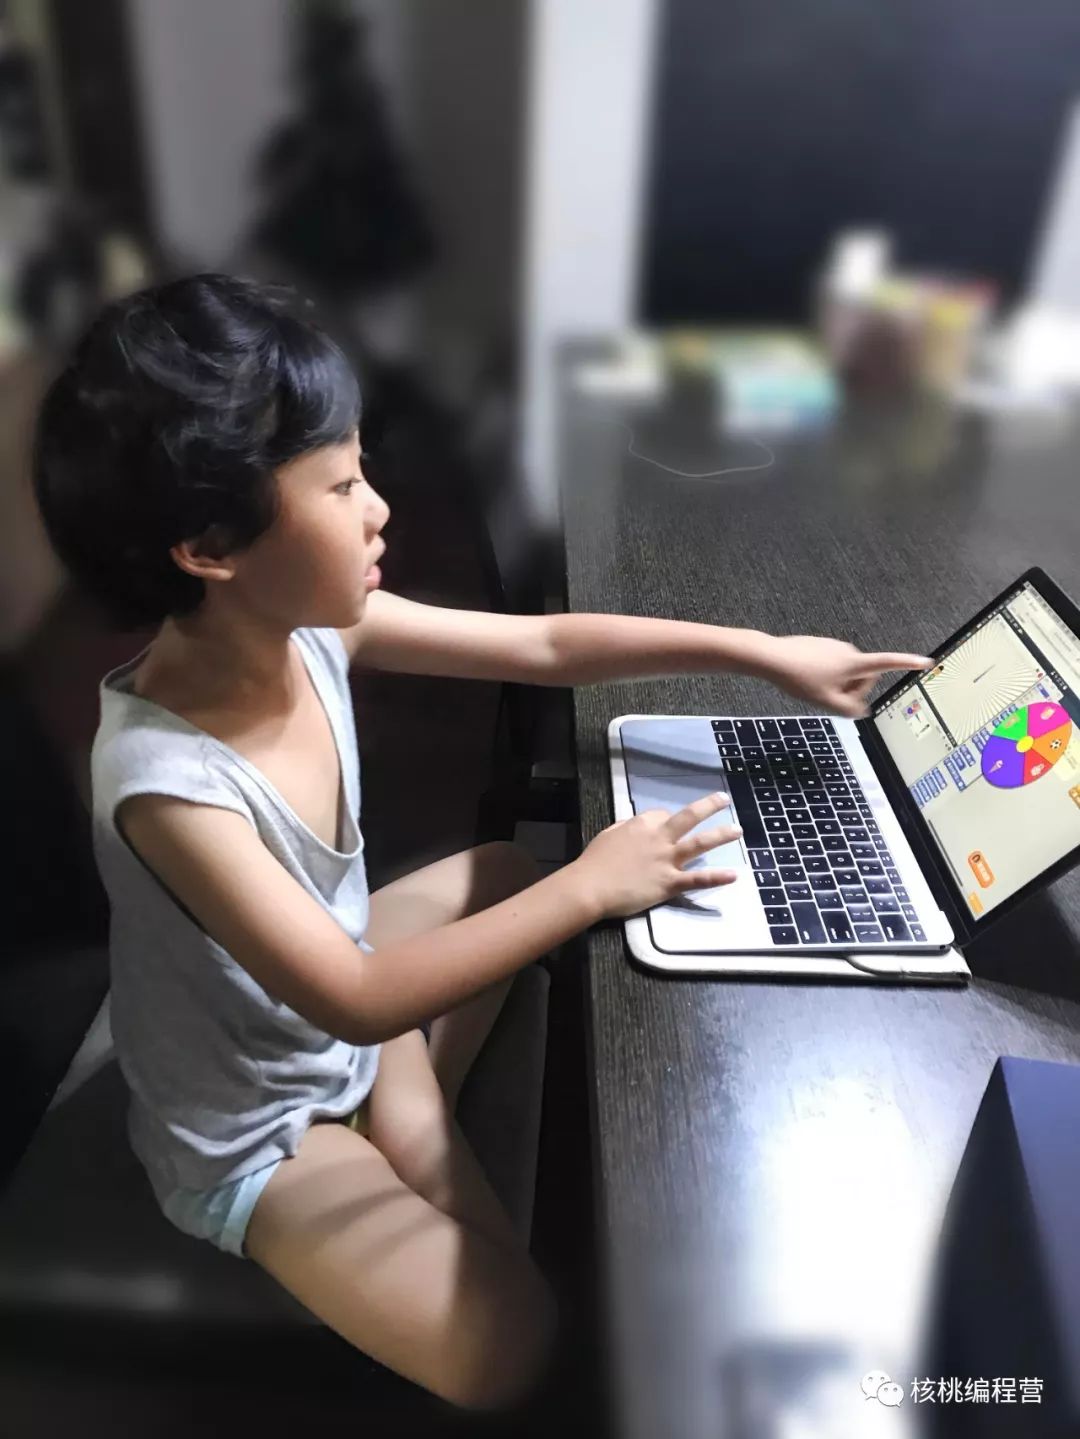 来稿 | 6岁娃痴迷编程，父母要怎样发现和引导孩子的潜能？